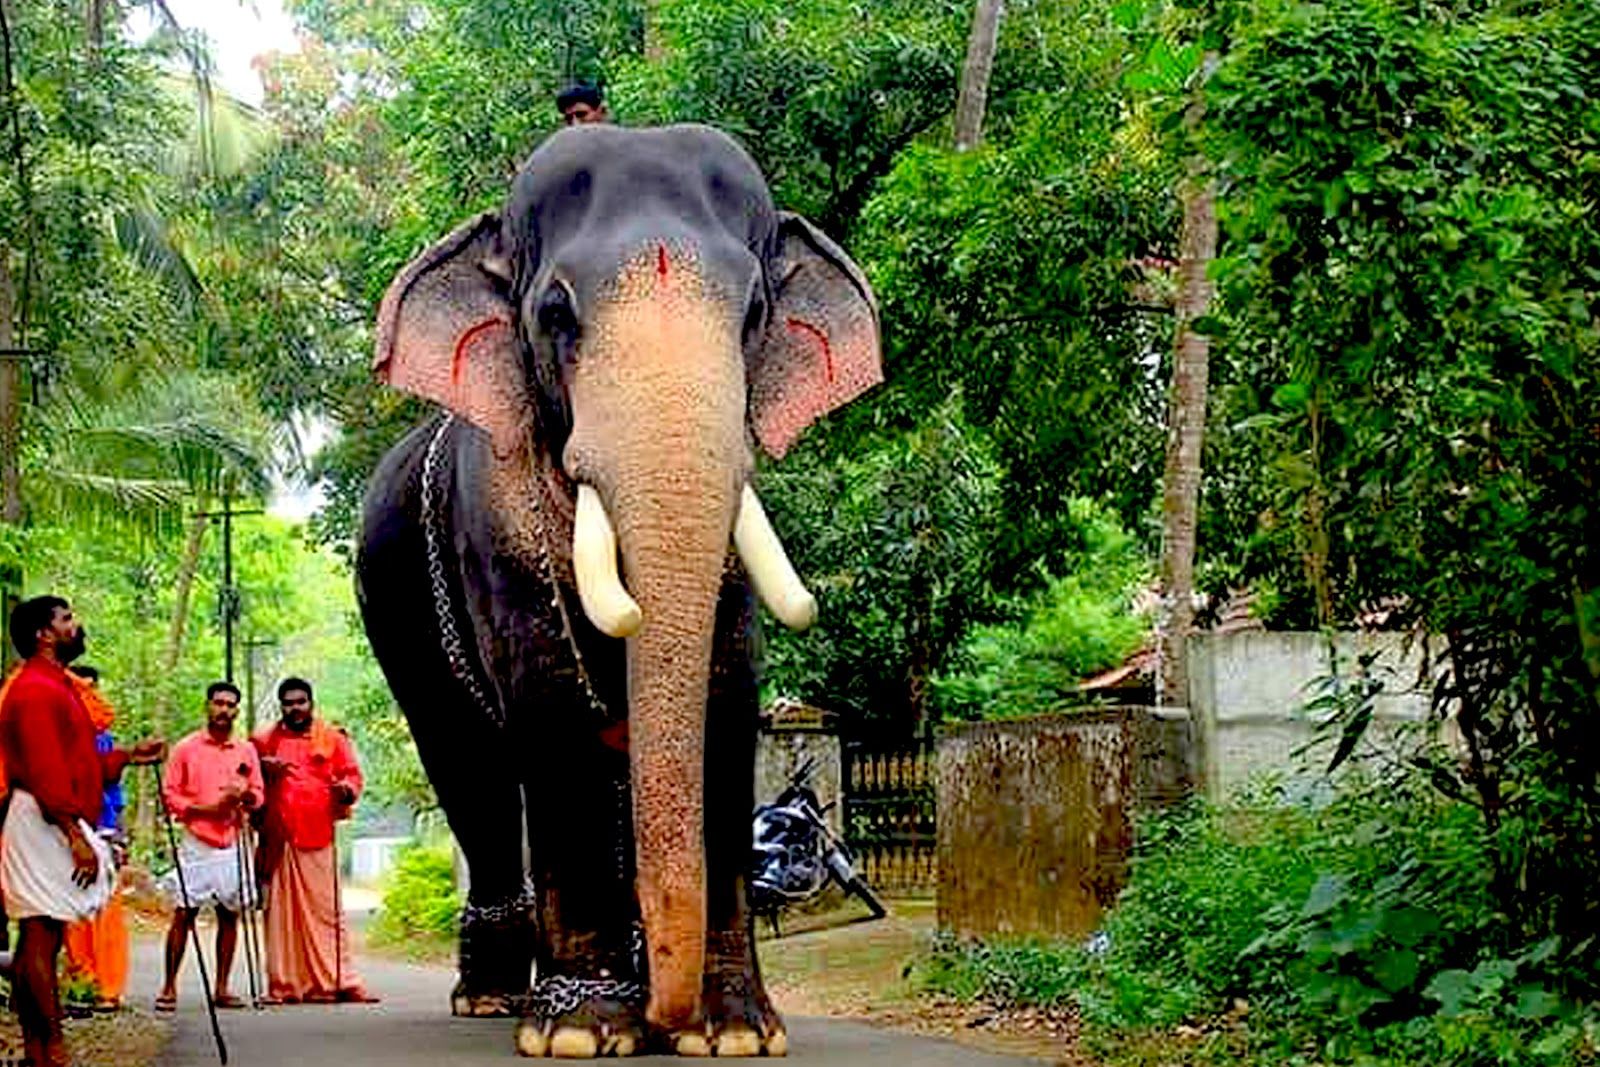 Kerala Elephants Image. Kerala elephants wallpaper HD. Kerala elephant photo and names